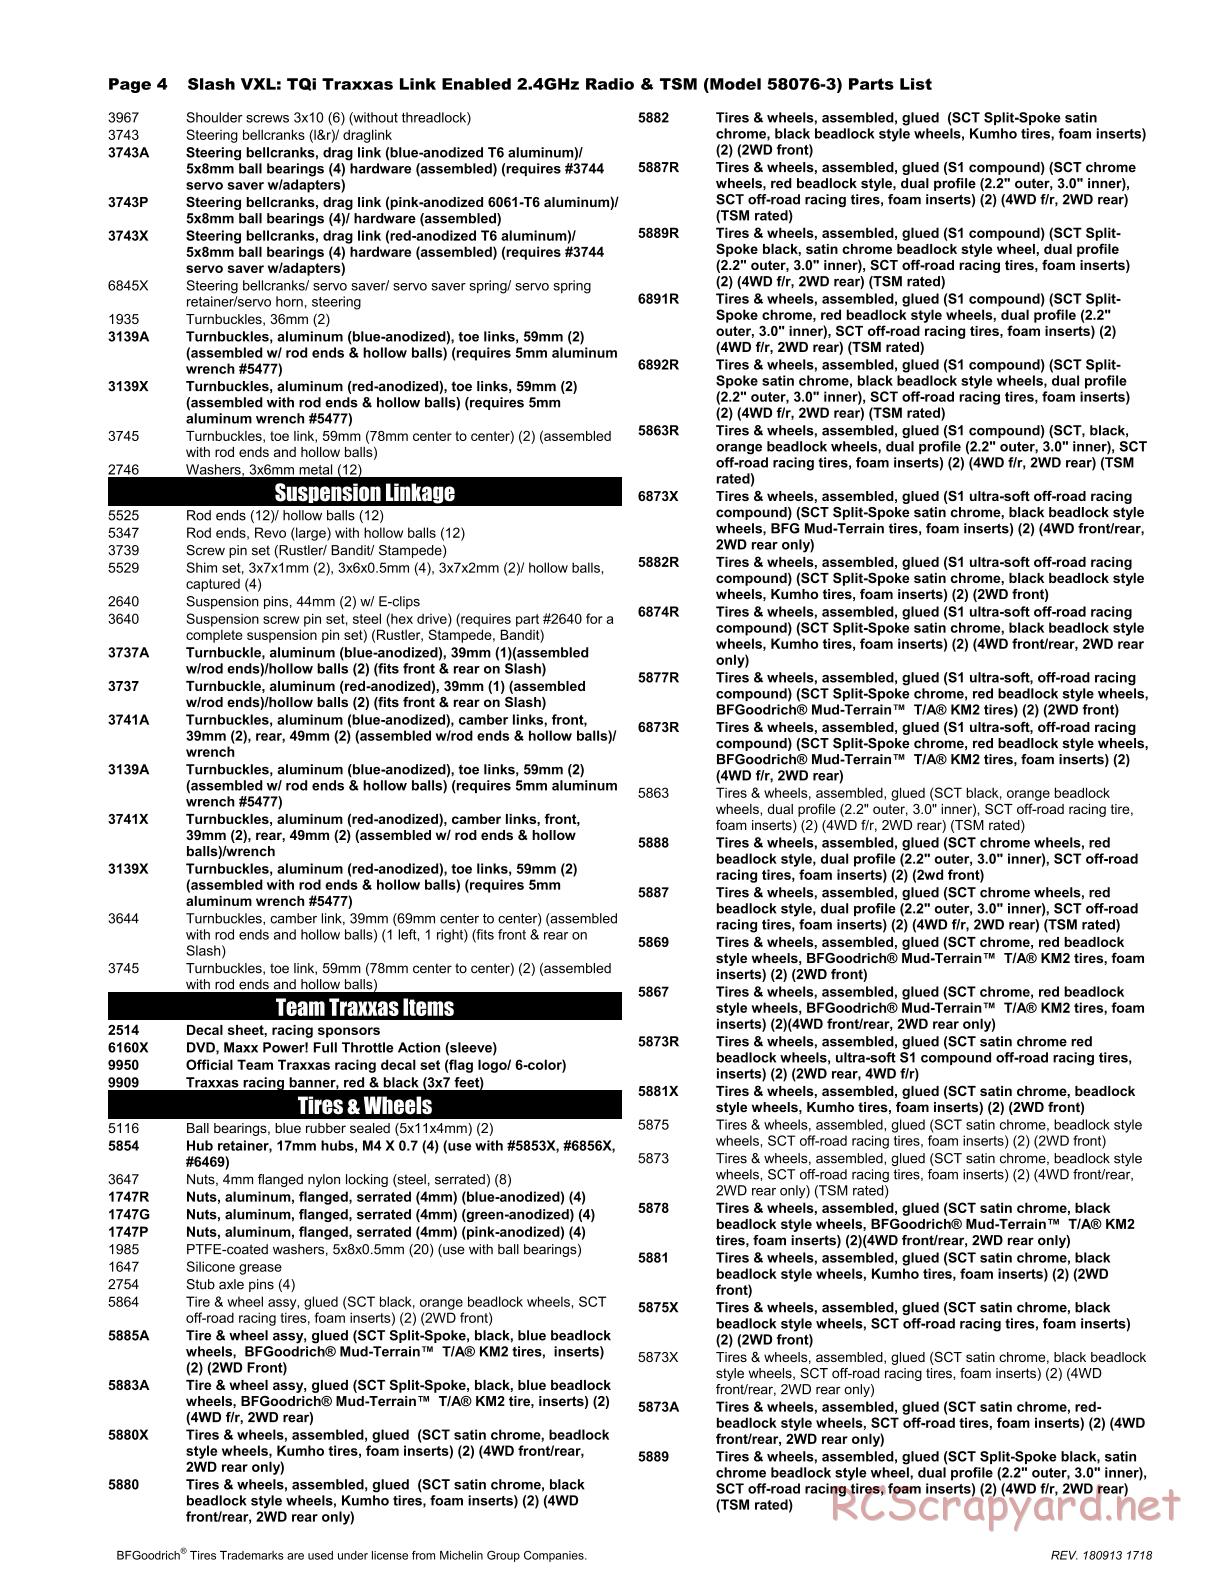 Traxxas - Slash 2WD VXL TSM (2015) - Parts List - Page 4